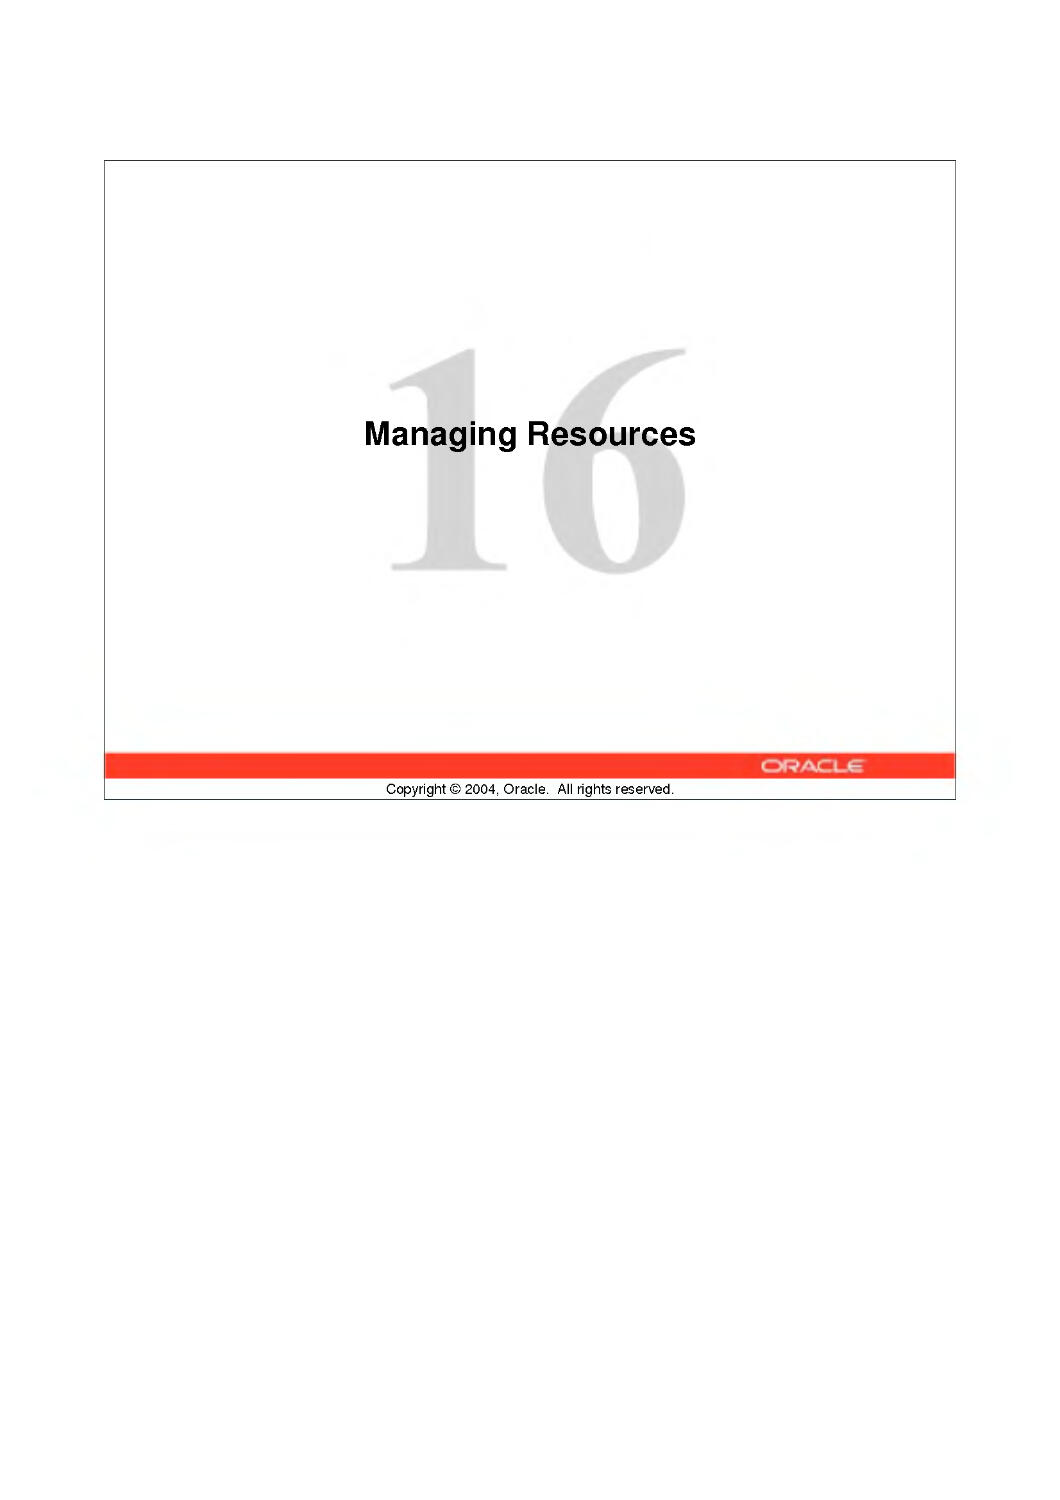 16 Managing Resources